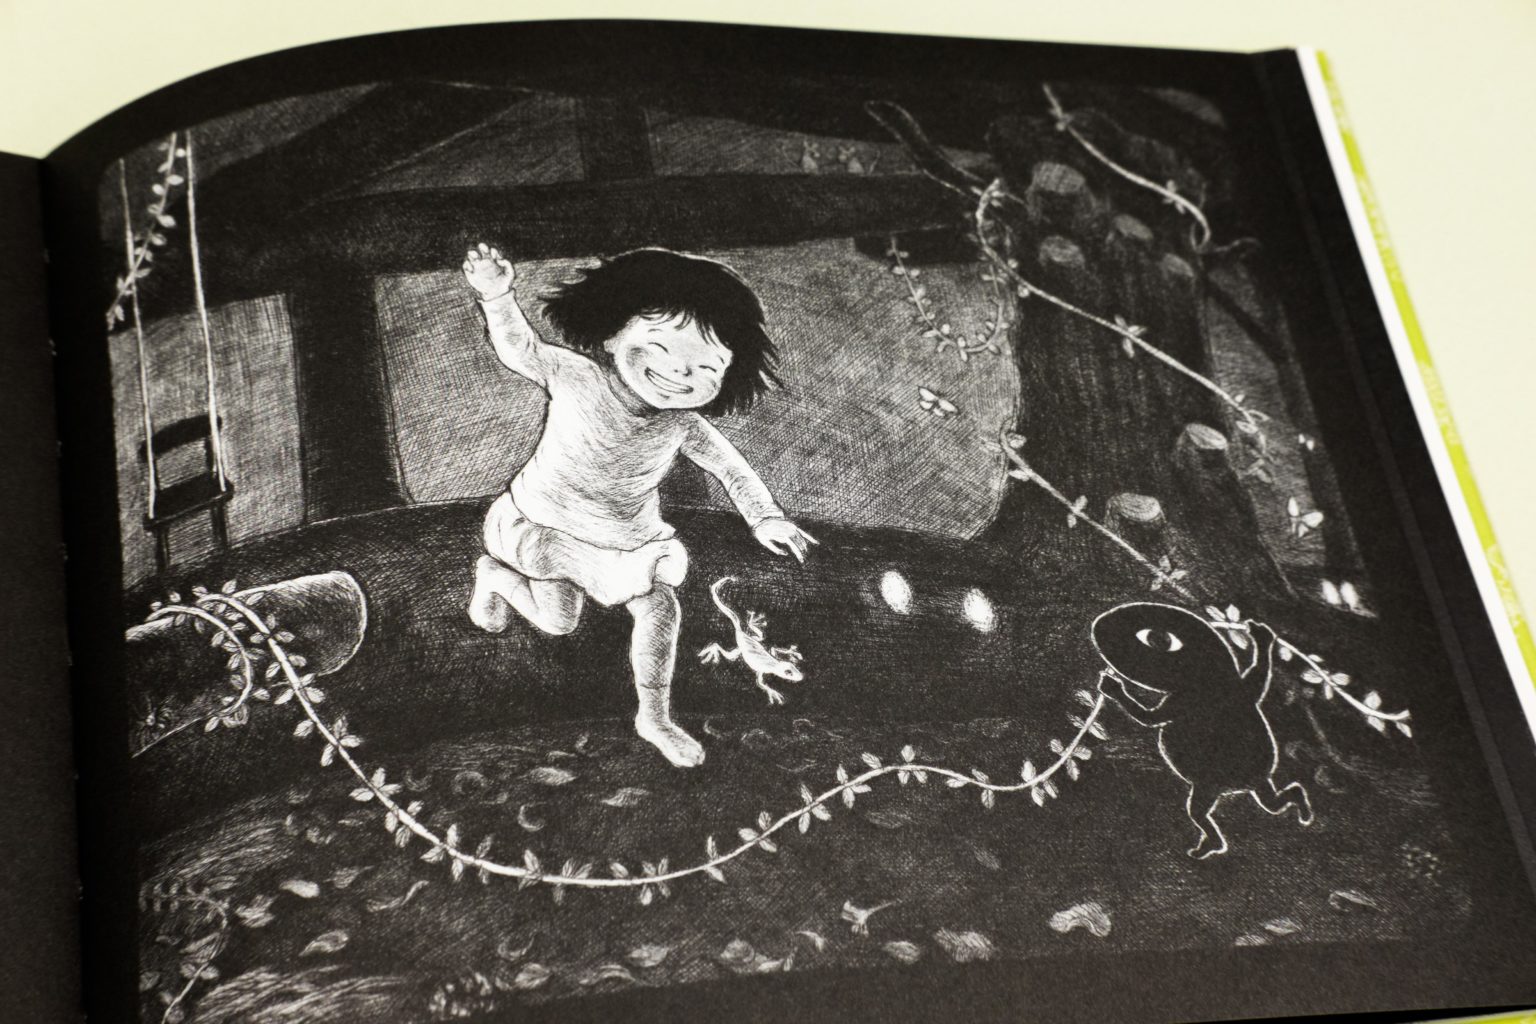 La petite fille du livre danse au milieu de guirlandes avec sa nouvelle amie, la petite chose noire